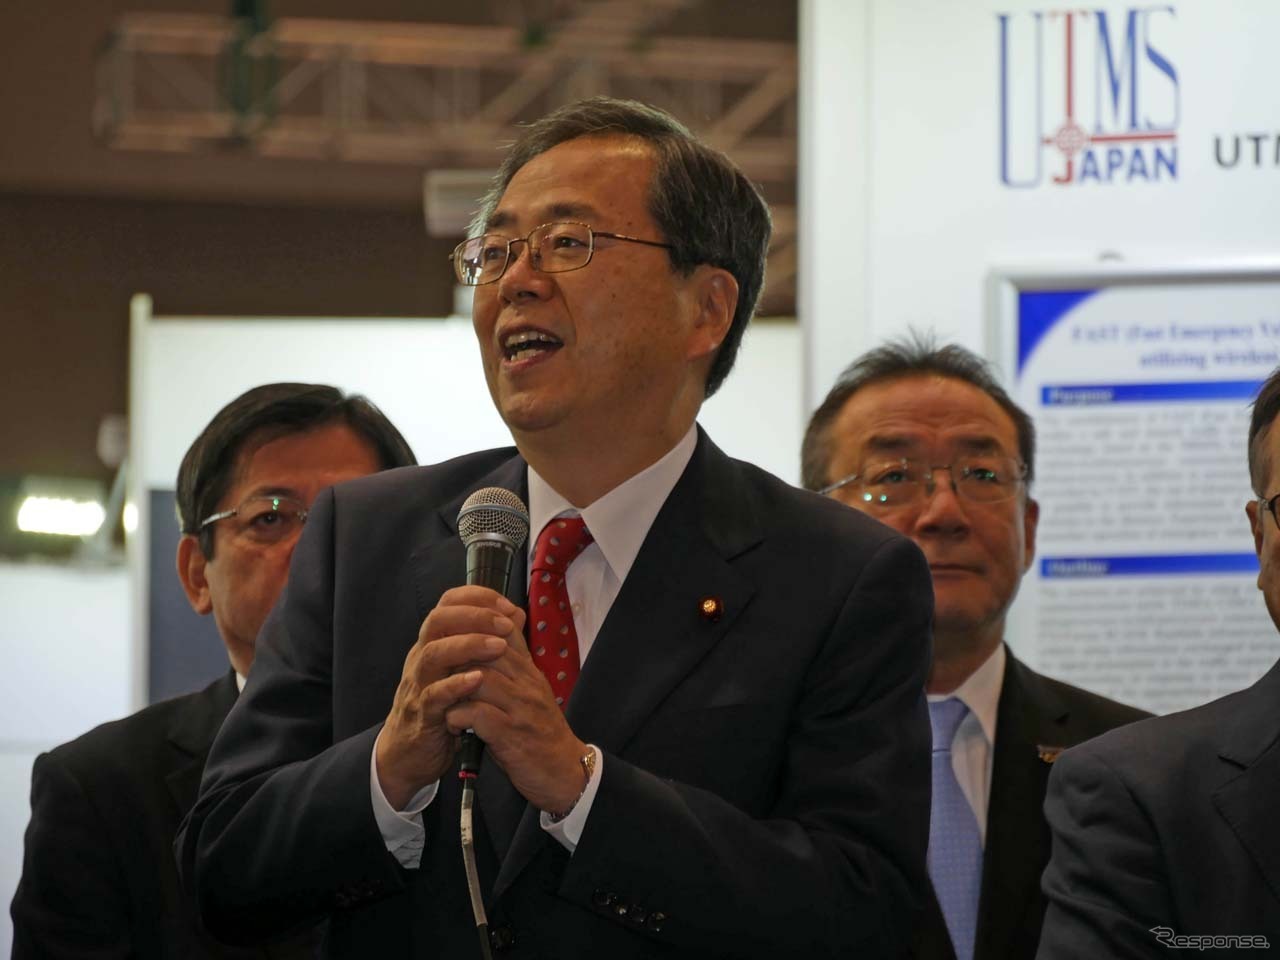 2016年、ITSジャパンが出展する「ジャパンパビリオン」で挨拶をした時の斉藤鉄夫氏。2008年8月から2009年9月までは福田康夫改造内閣と麻生太郎内閣で環境大臣を務めた。